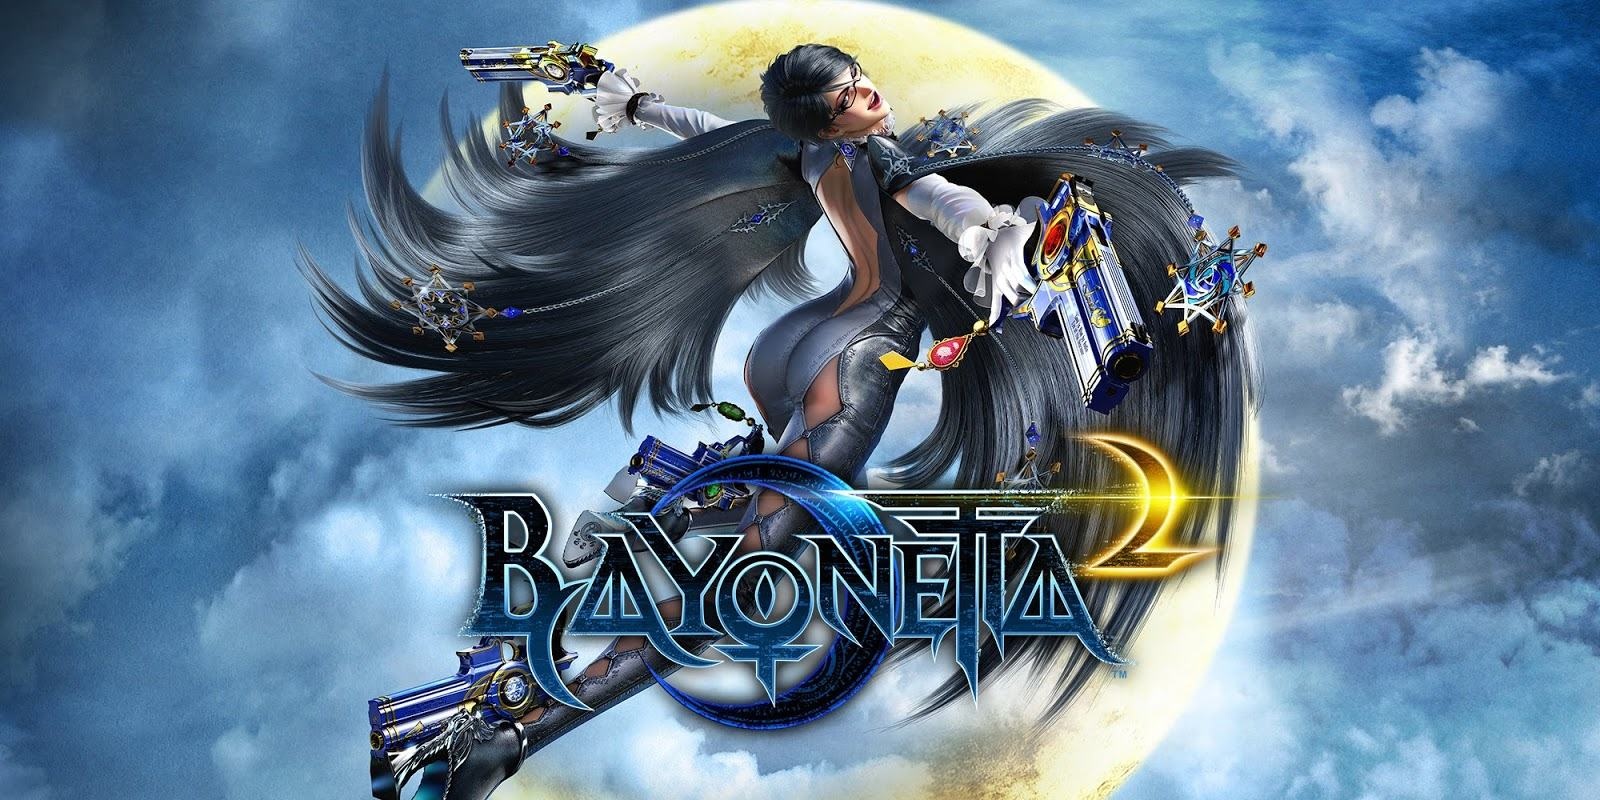 Game Bayonetta 2 - Game hành động chặt chém hấp dẫn